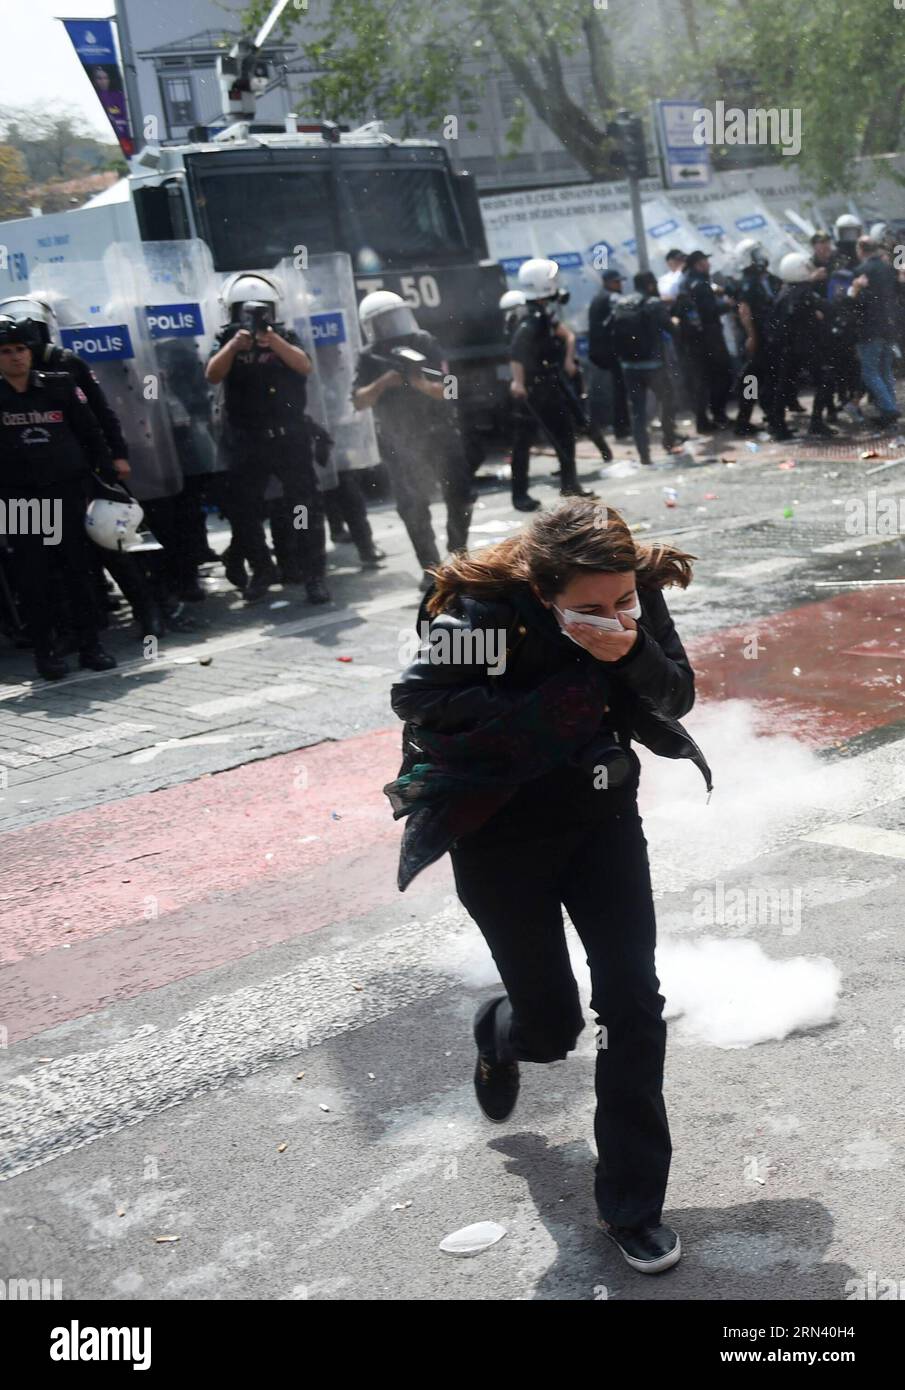 (150501) -- ISTANBUL, Mai 1,2015 -- Eine Frau bedeckt ihre Nase und ihren Mund gegen Tränengas während des maimärz in Istanbul, Türkei, 1. Mai 2015. Die türkische Aufständische Polizei feuerte am Freitag Wasserkanonen und Tränengas ab, um Demonstranten am Maitag zu zerstreuen, die vor fast 40 Jahren zum berühmten Taksim-Platz in Istanbul marschieren wollten, um dort Massenmorde an Arbeitern zu markieren. Istanbuls Sicherheitschef Selami Altinok erklärte, dass 136 Menschen inhaftiert seien. )(bxq) TÜRKEI-ISTANBUL-MAI-TAG-ZUSAMMENPRALL HexCanling PUBLICATIONxNOTxINxCHN 150501 Istanbul 1. Mai 2015 eine Frau bedeckt ihre Nase und ihren Mund gegen Tränengas während des Mai Tag M Stockfoto